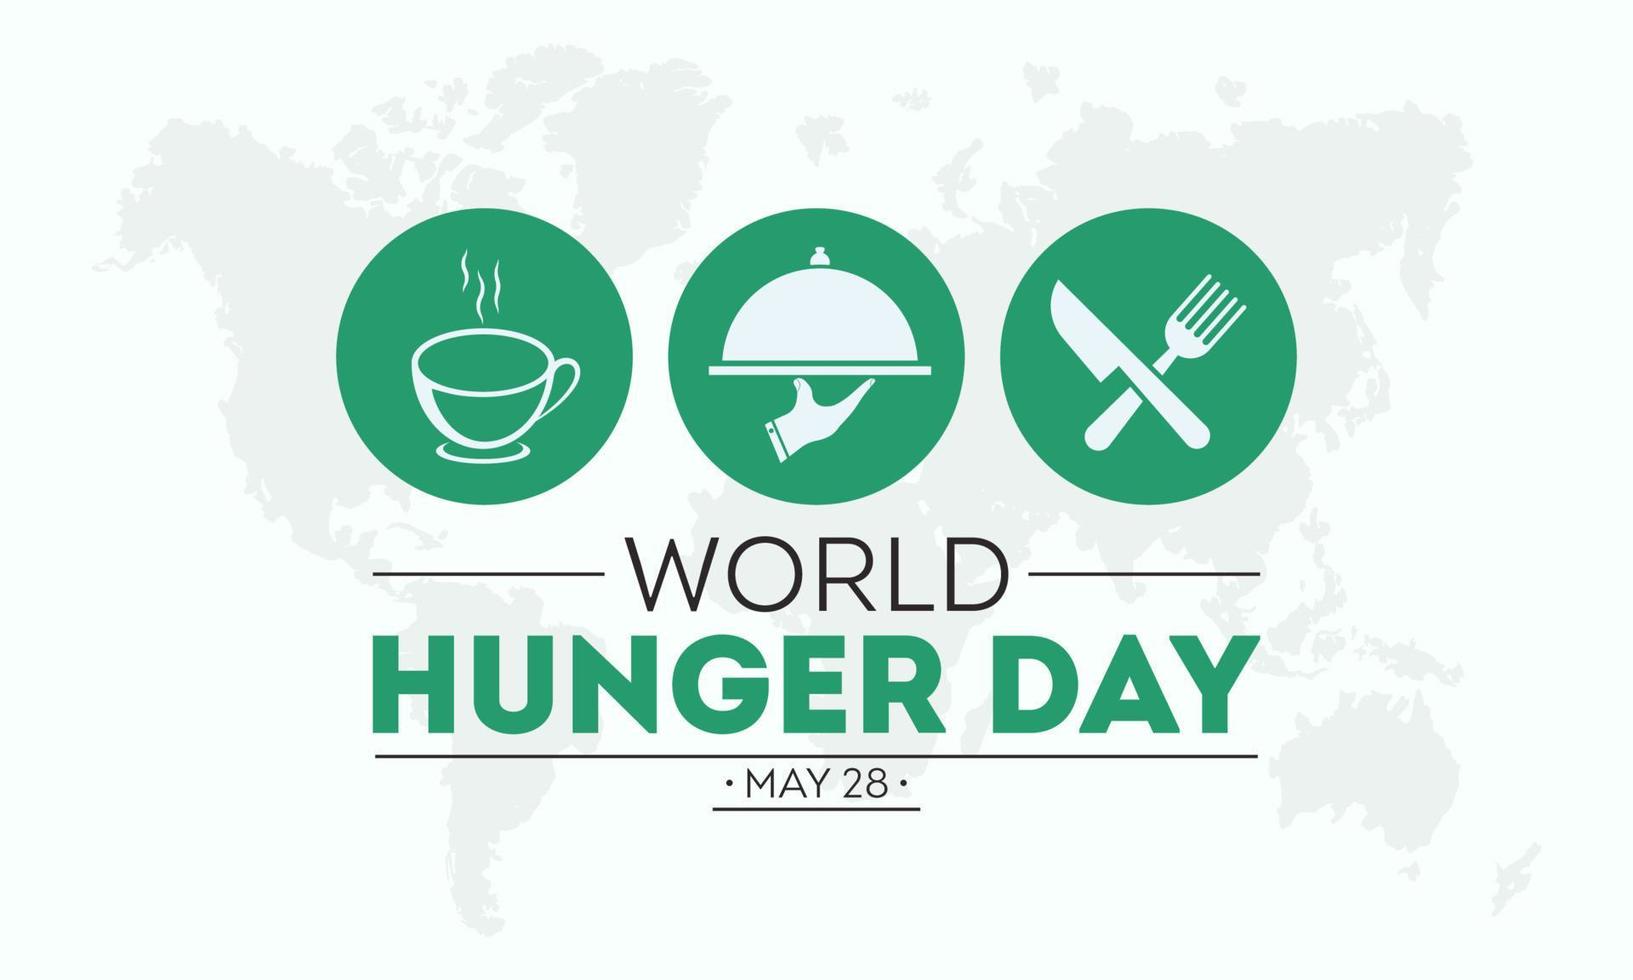 mondo fame giorno è osservato ogni anno su 28th Maggio. vettore illustrazione su il tema di mondo fame giorno cibo prevenzione e consapevolezza vettore concetto.